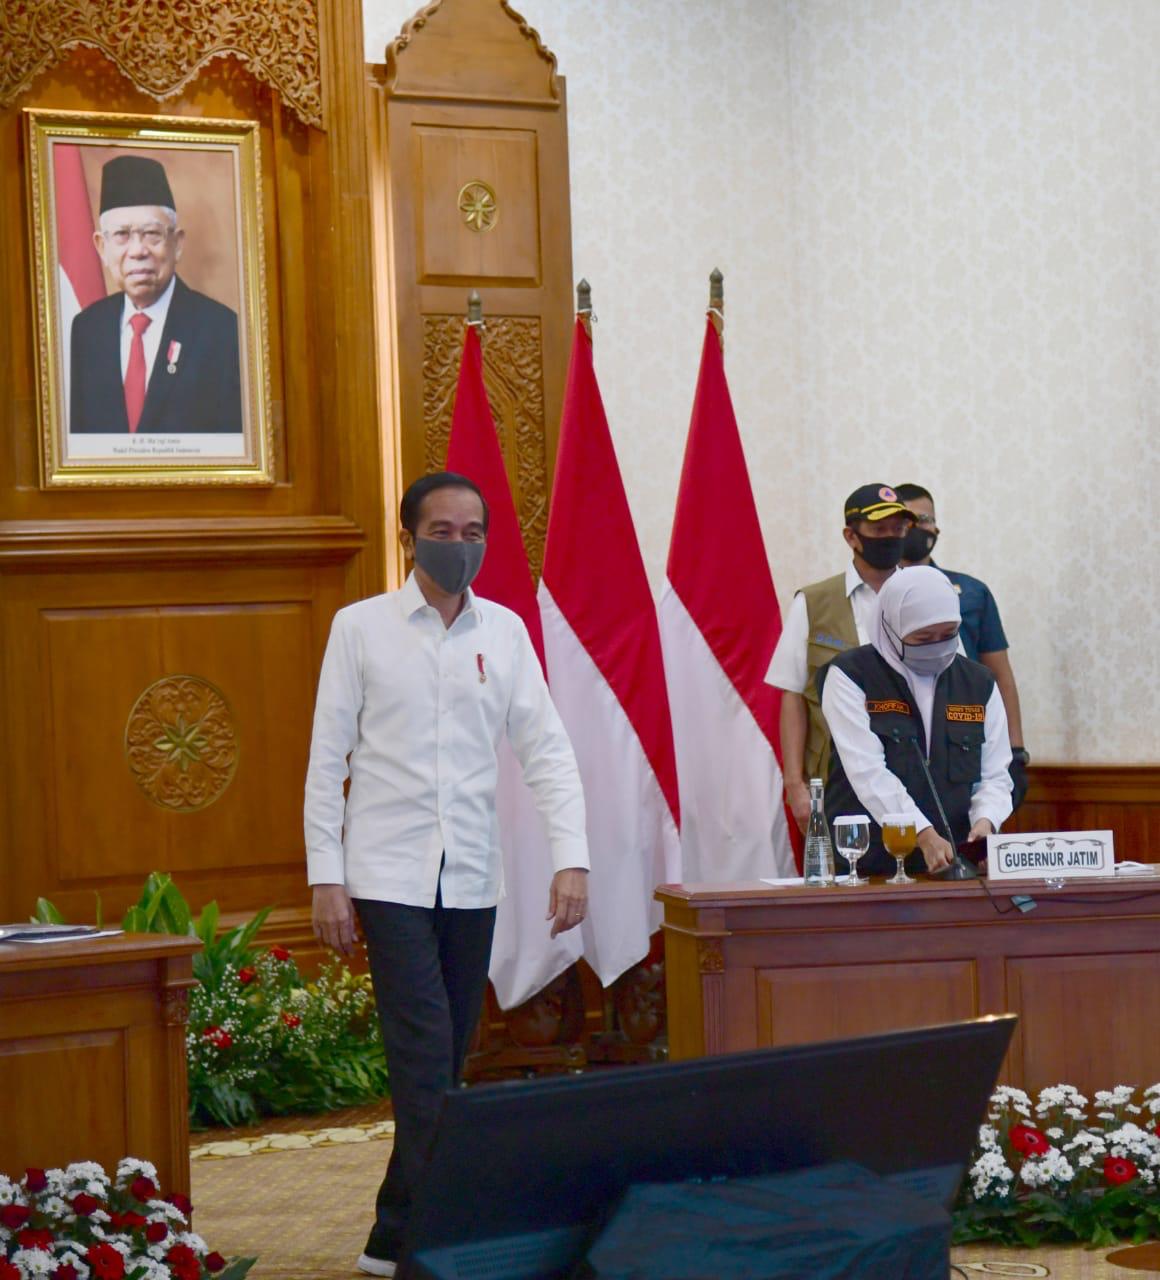 Presiden joko widodo saat datang di Kota Surabaya. (Foto: pemprov jatim)